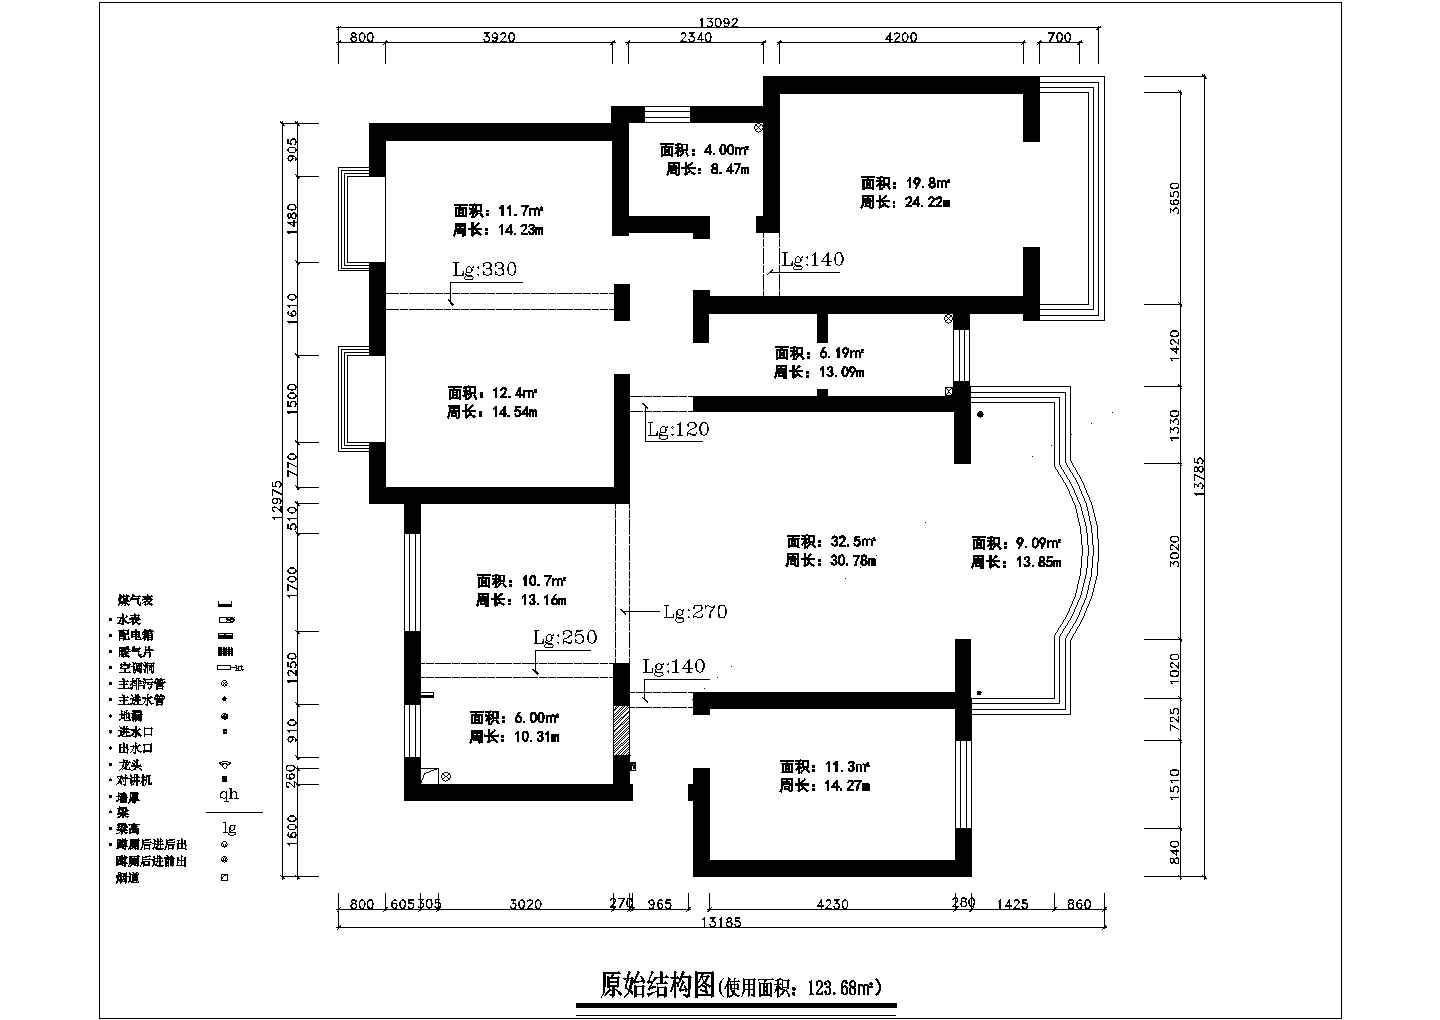 某市现代中式四房家装设计施工图纸